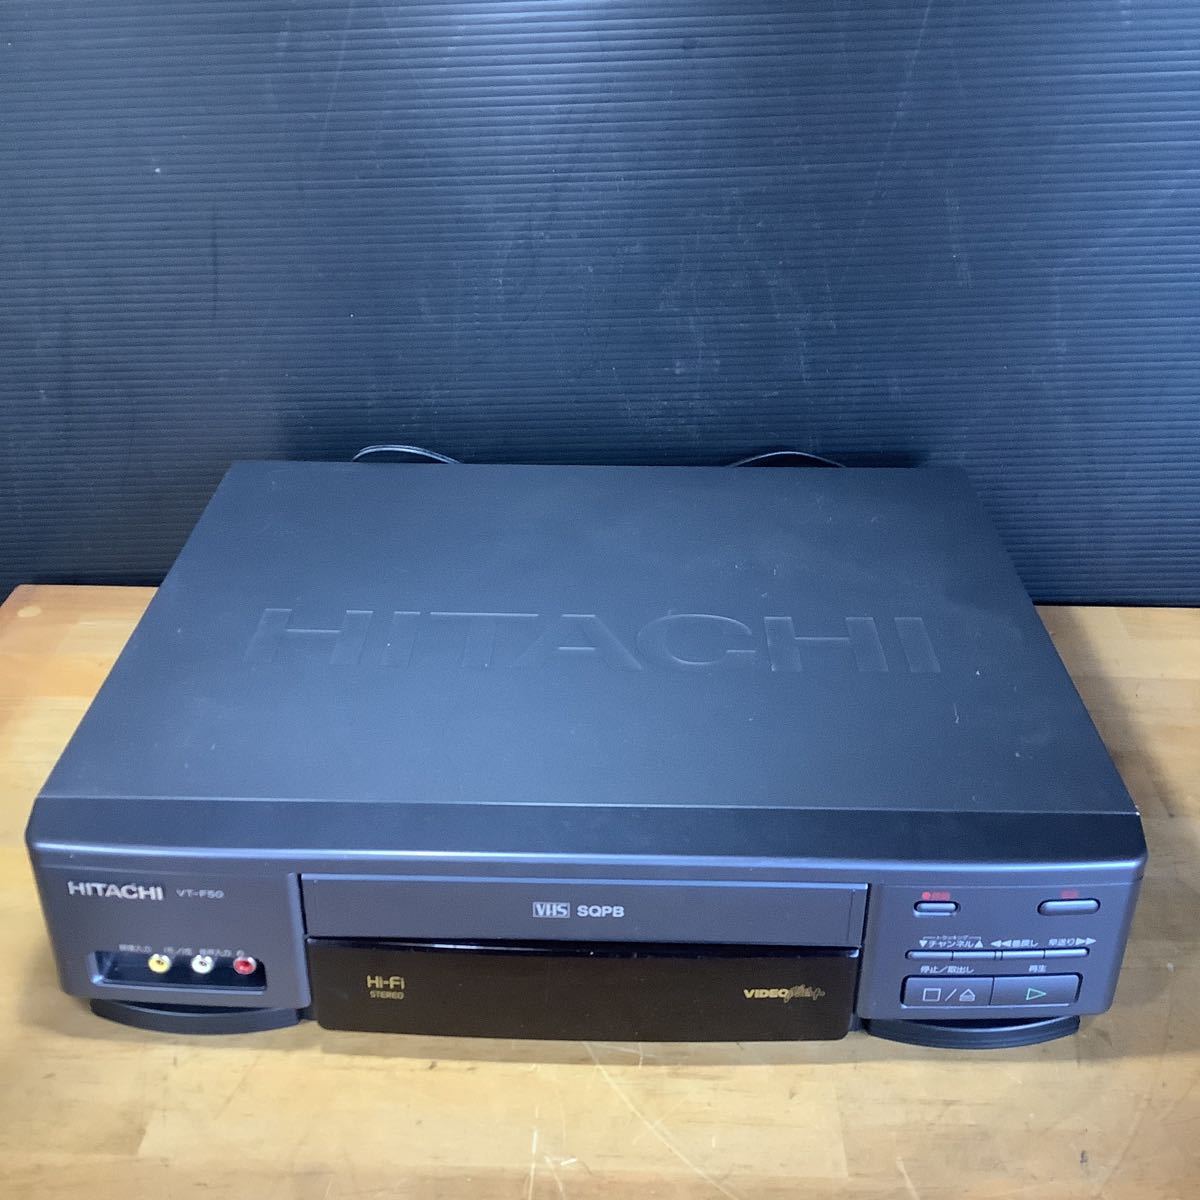 HITACHI видео кассета магнитофон Hitachi VT-F50 94 год производства MADE IN JAPAN VHS видеодека б/у 